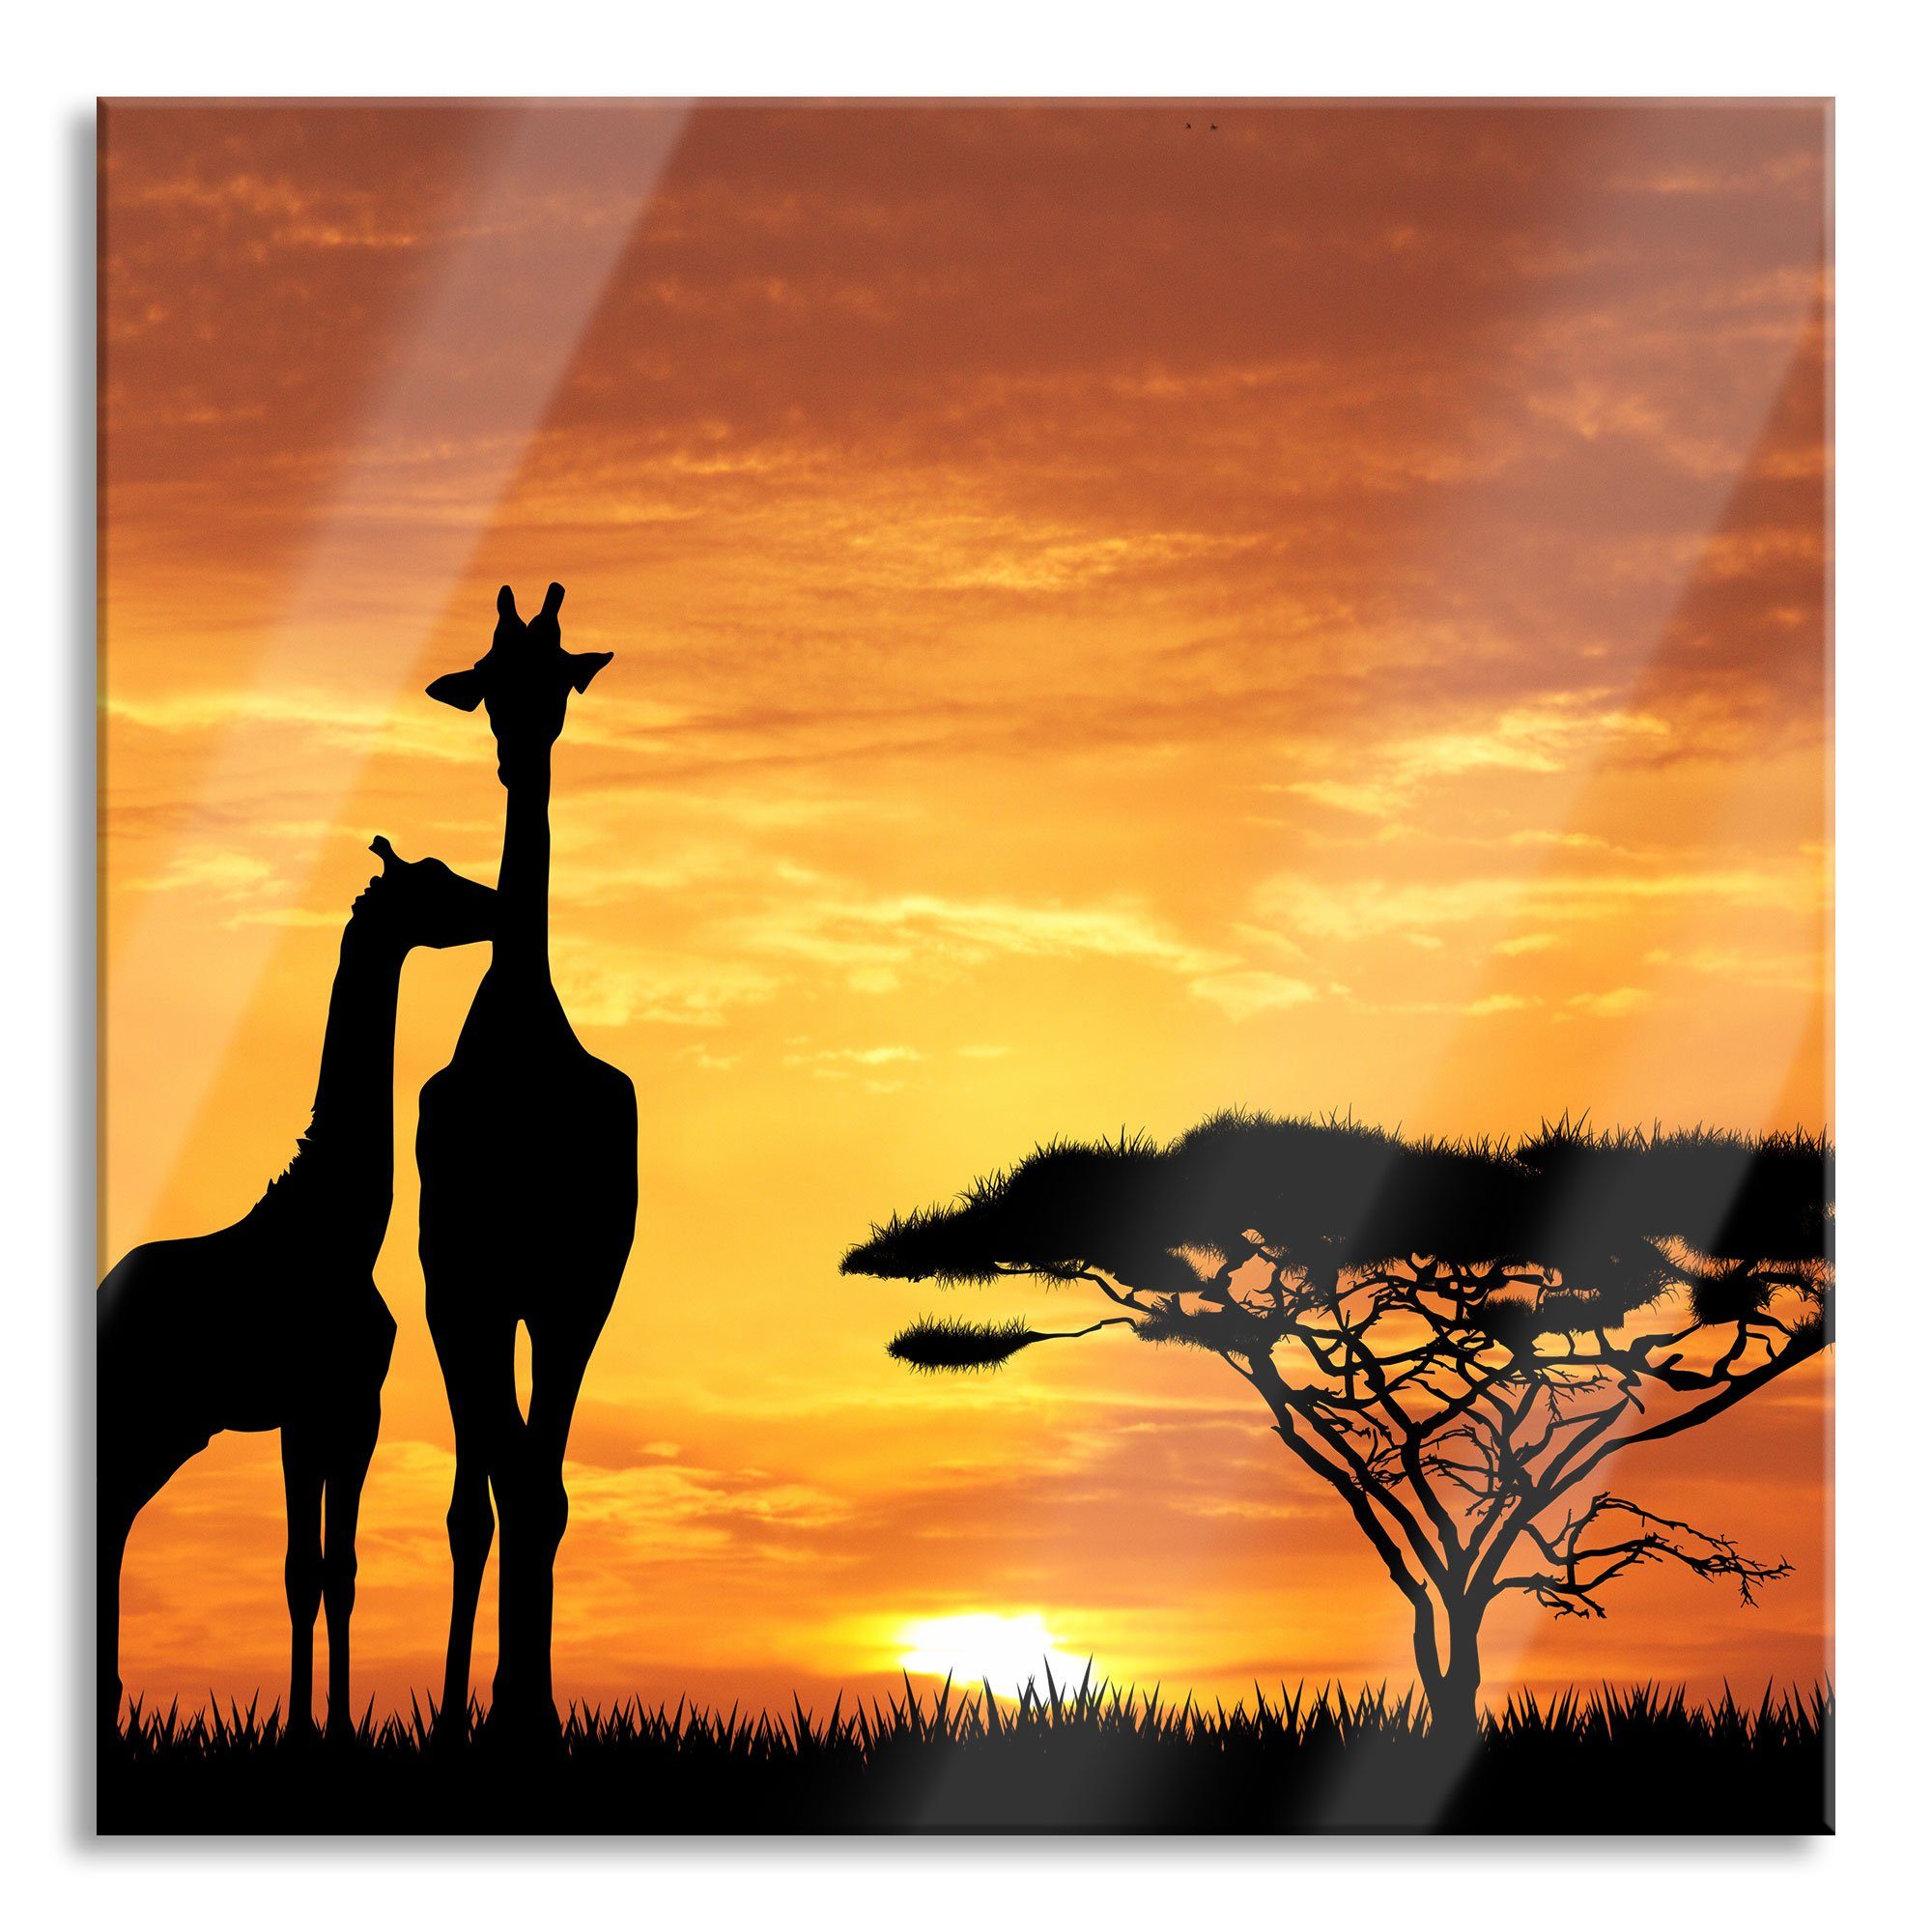 Pixxprint Glasbild Giraffen im Sonnenuntergang, Giraffen im Sonnenuntergang (1 St), Glasbild aus Echtglas, inkl. Aufhängungen und Abstandshalter